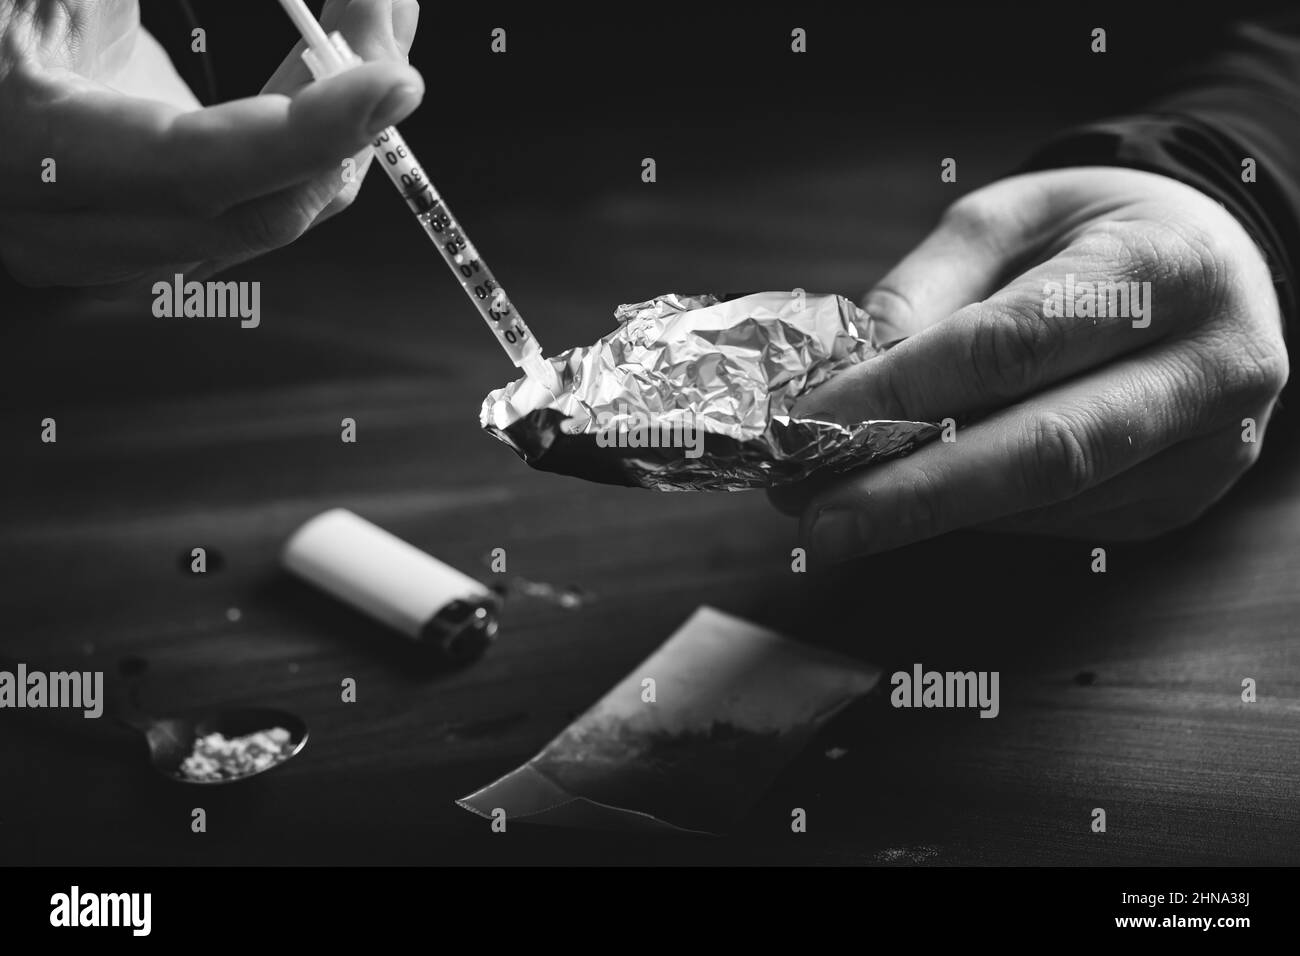 Addict/junkie homme préparant des drogues.Le concept de la criminalité et de la toxicomanie. Banque D'Images